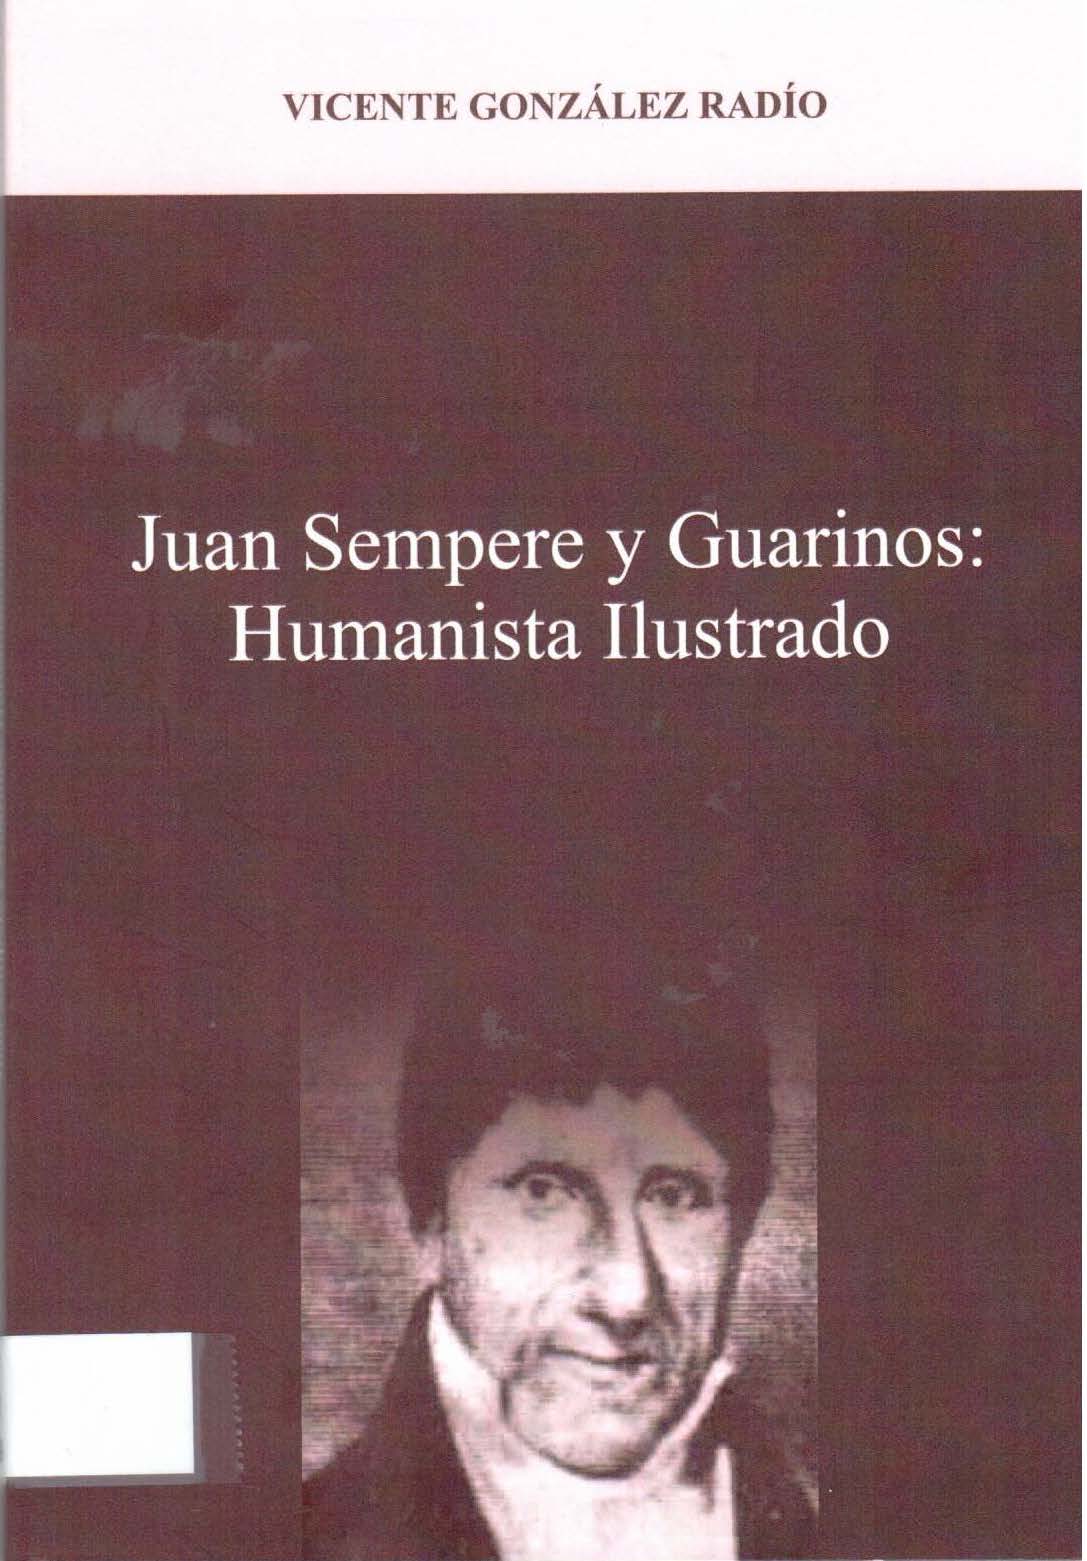 Imagen de portada del libro Juan Sempere y Guarinos